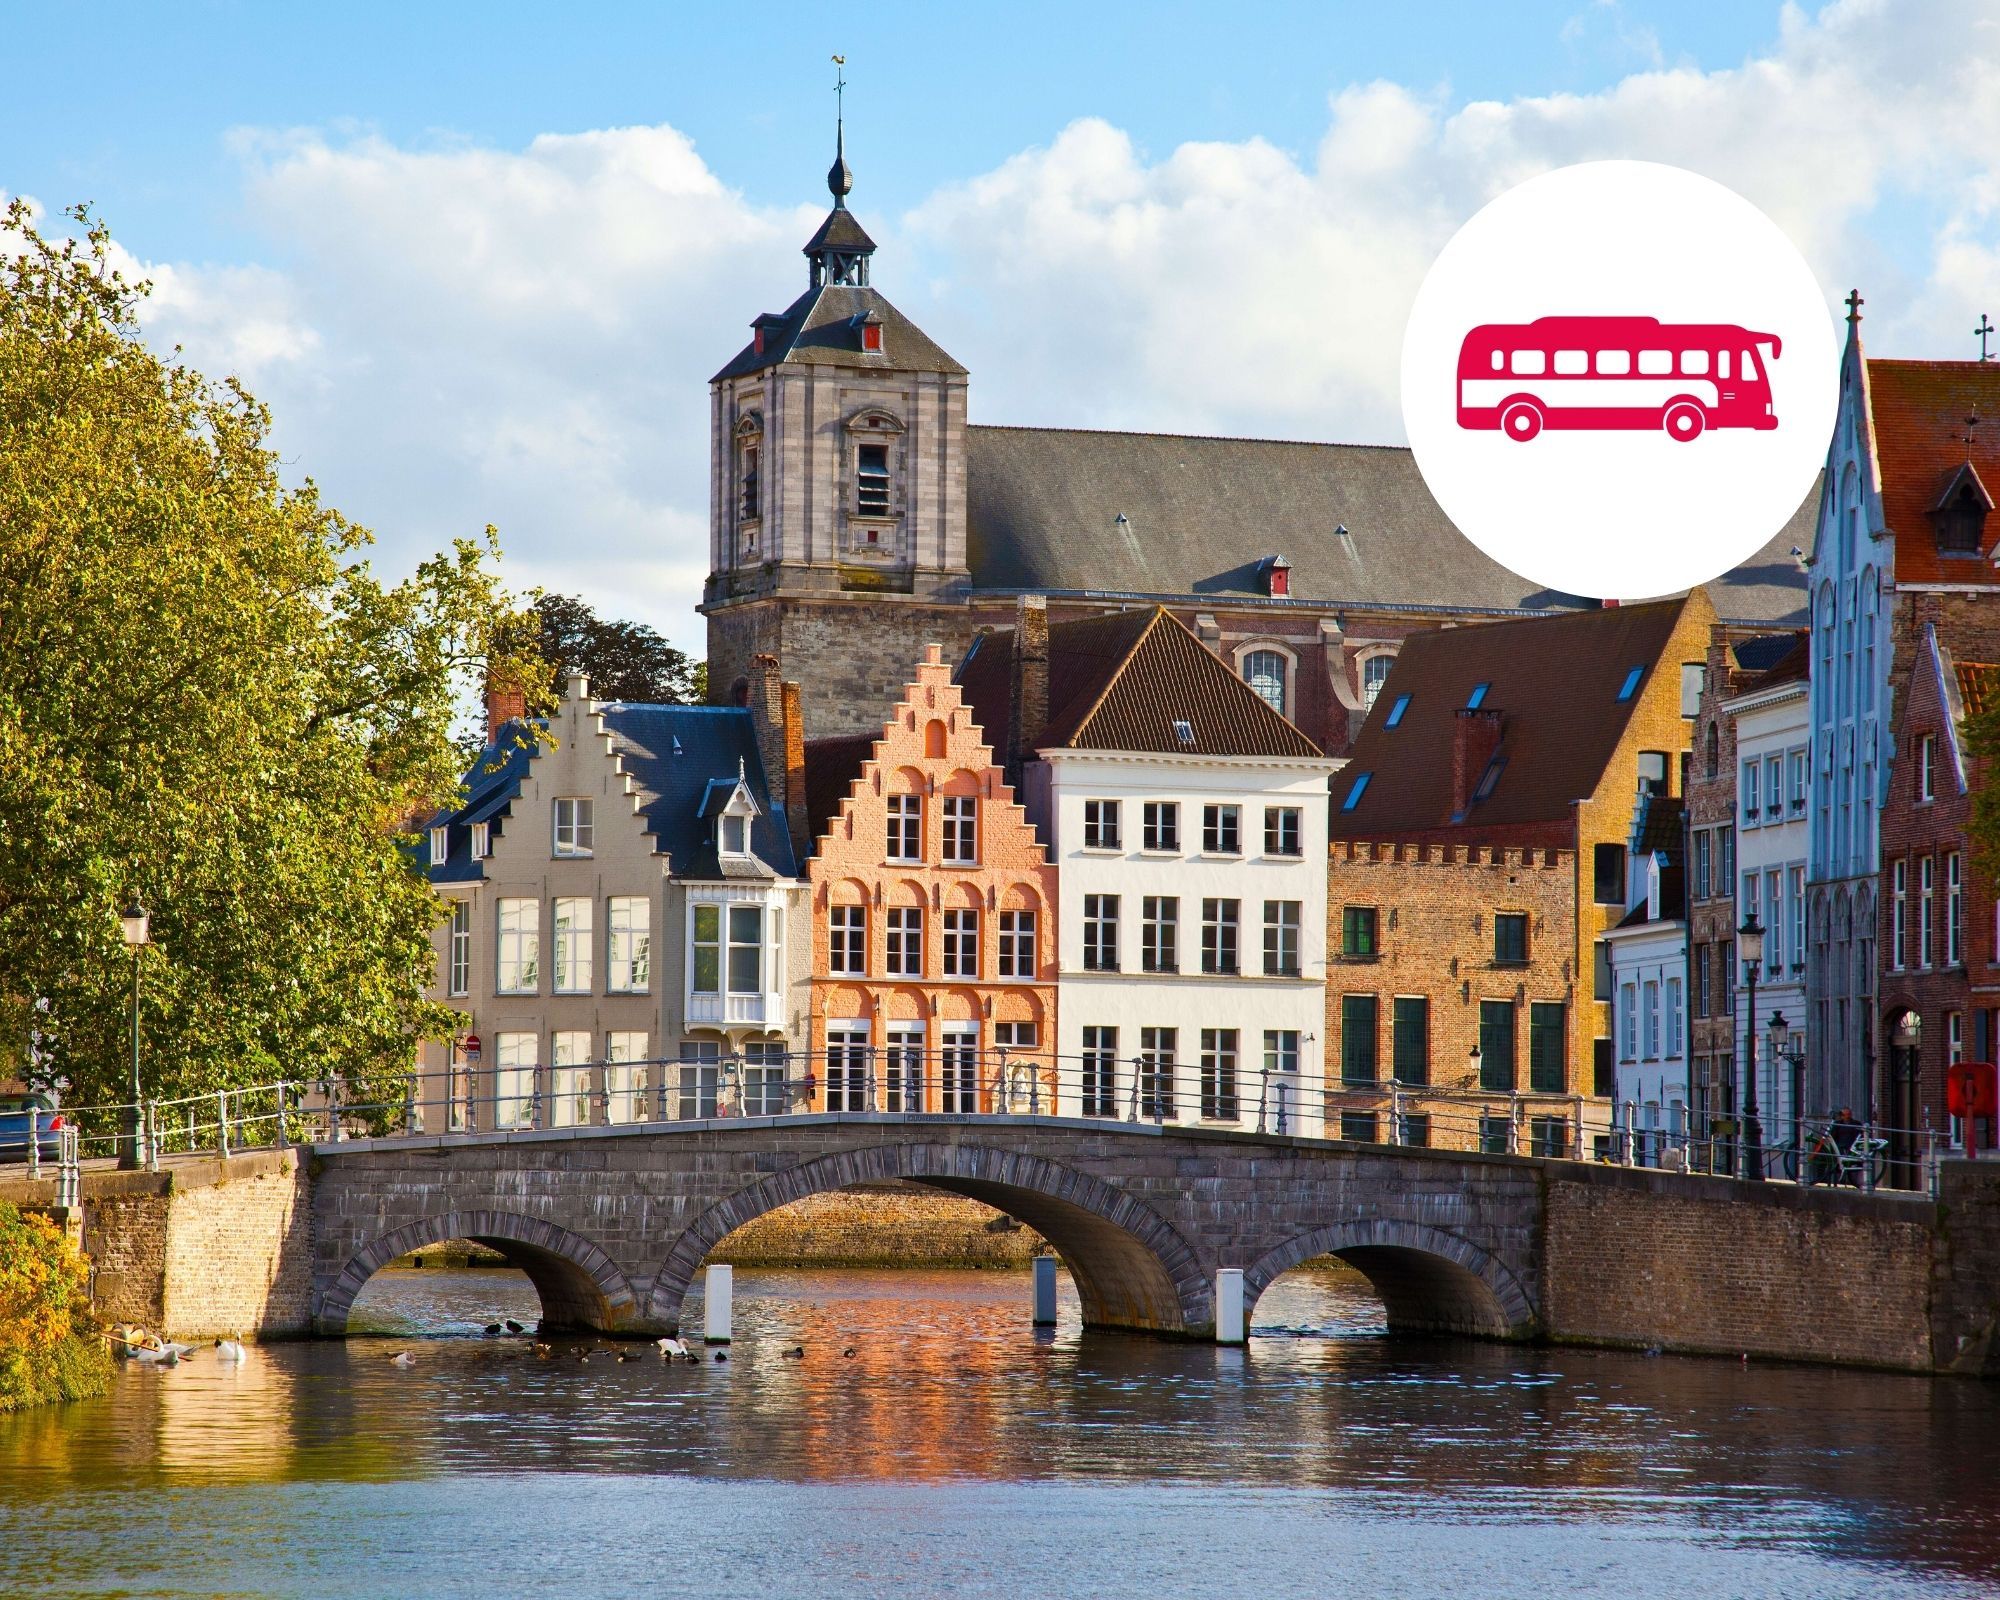 Explore the village of Bruges in Belgium